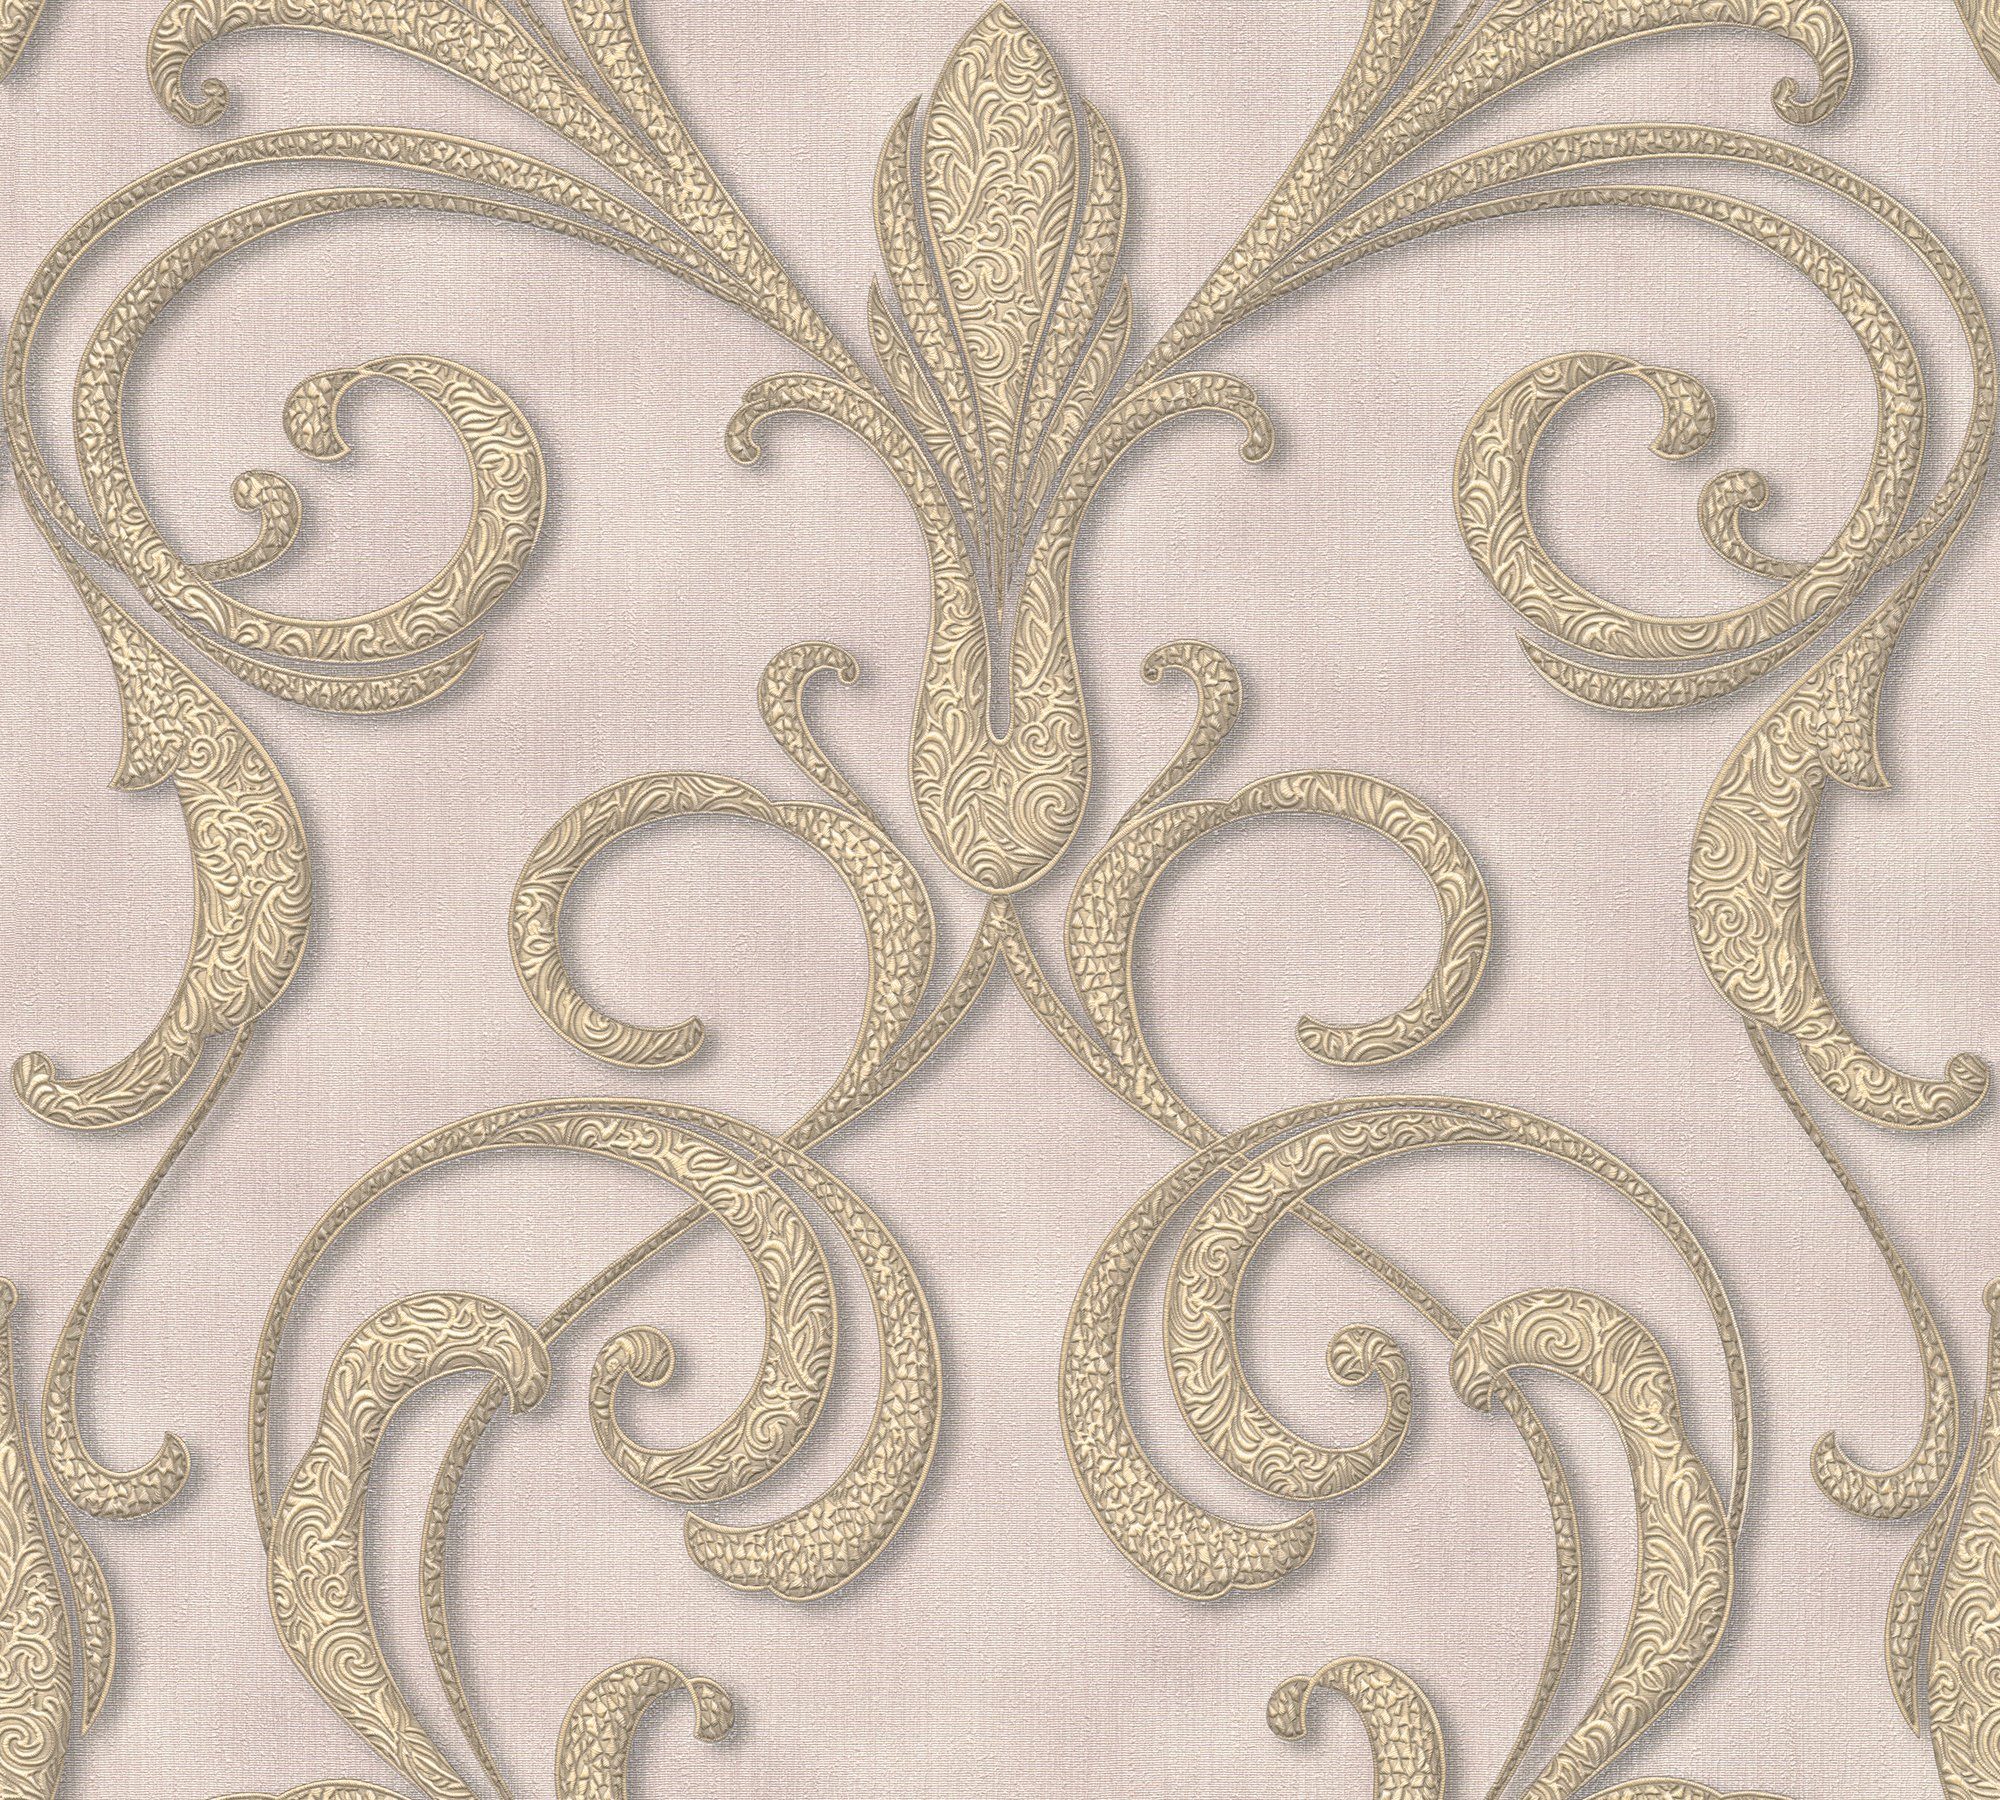 Paper Barock, Barock Création Tapete Ornament gold/violett/braun Vliestapete A.S. Nobile, Architects